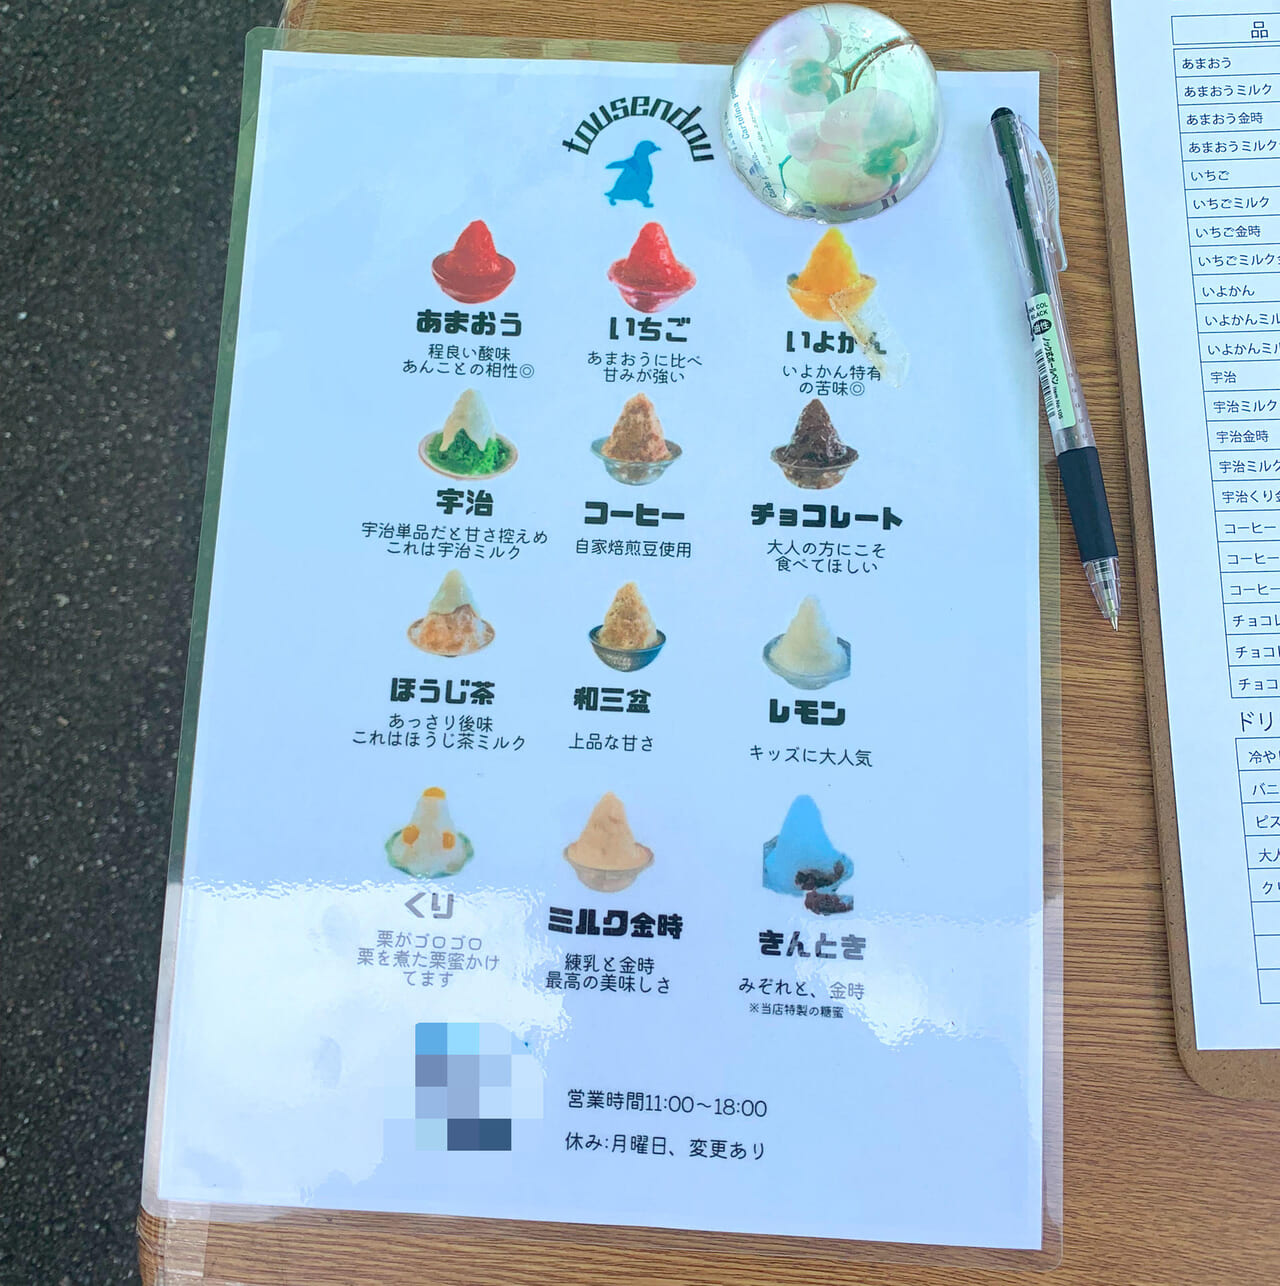 郷新屋敷町のかき氷の老舗「登泉堂」で今年のかき氷の販売が始まりました!!